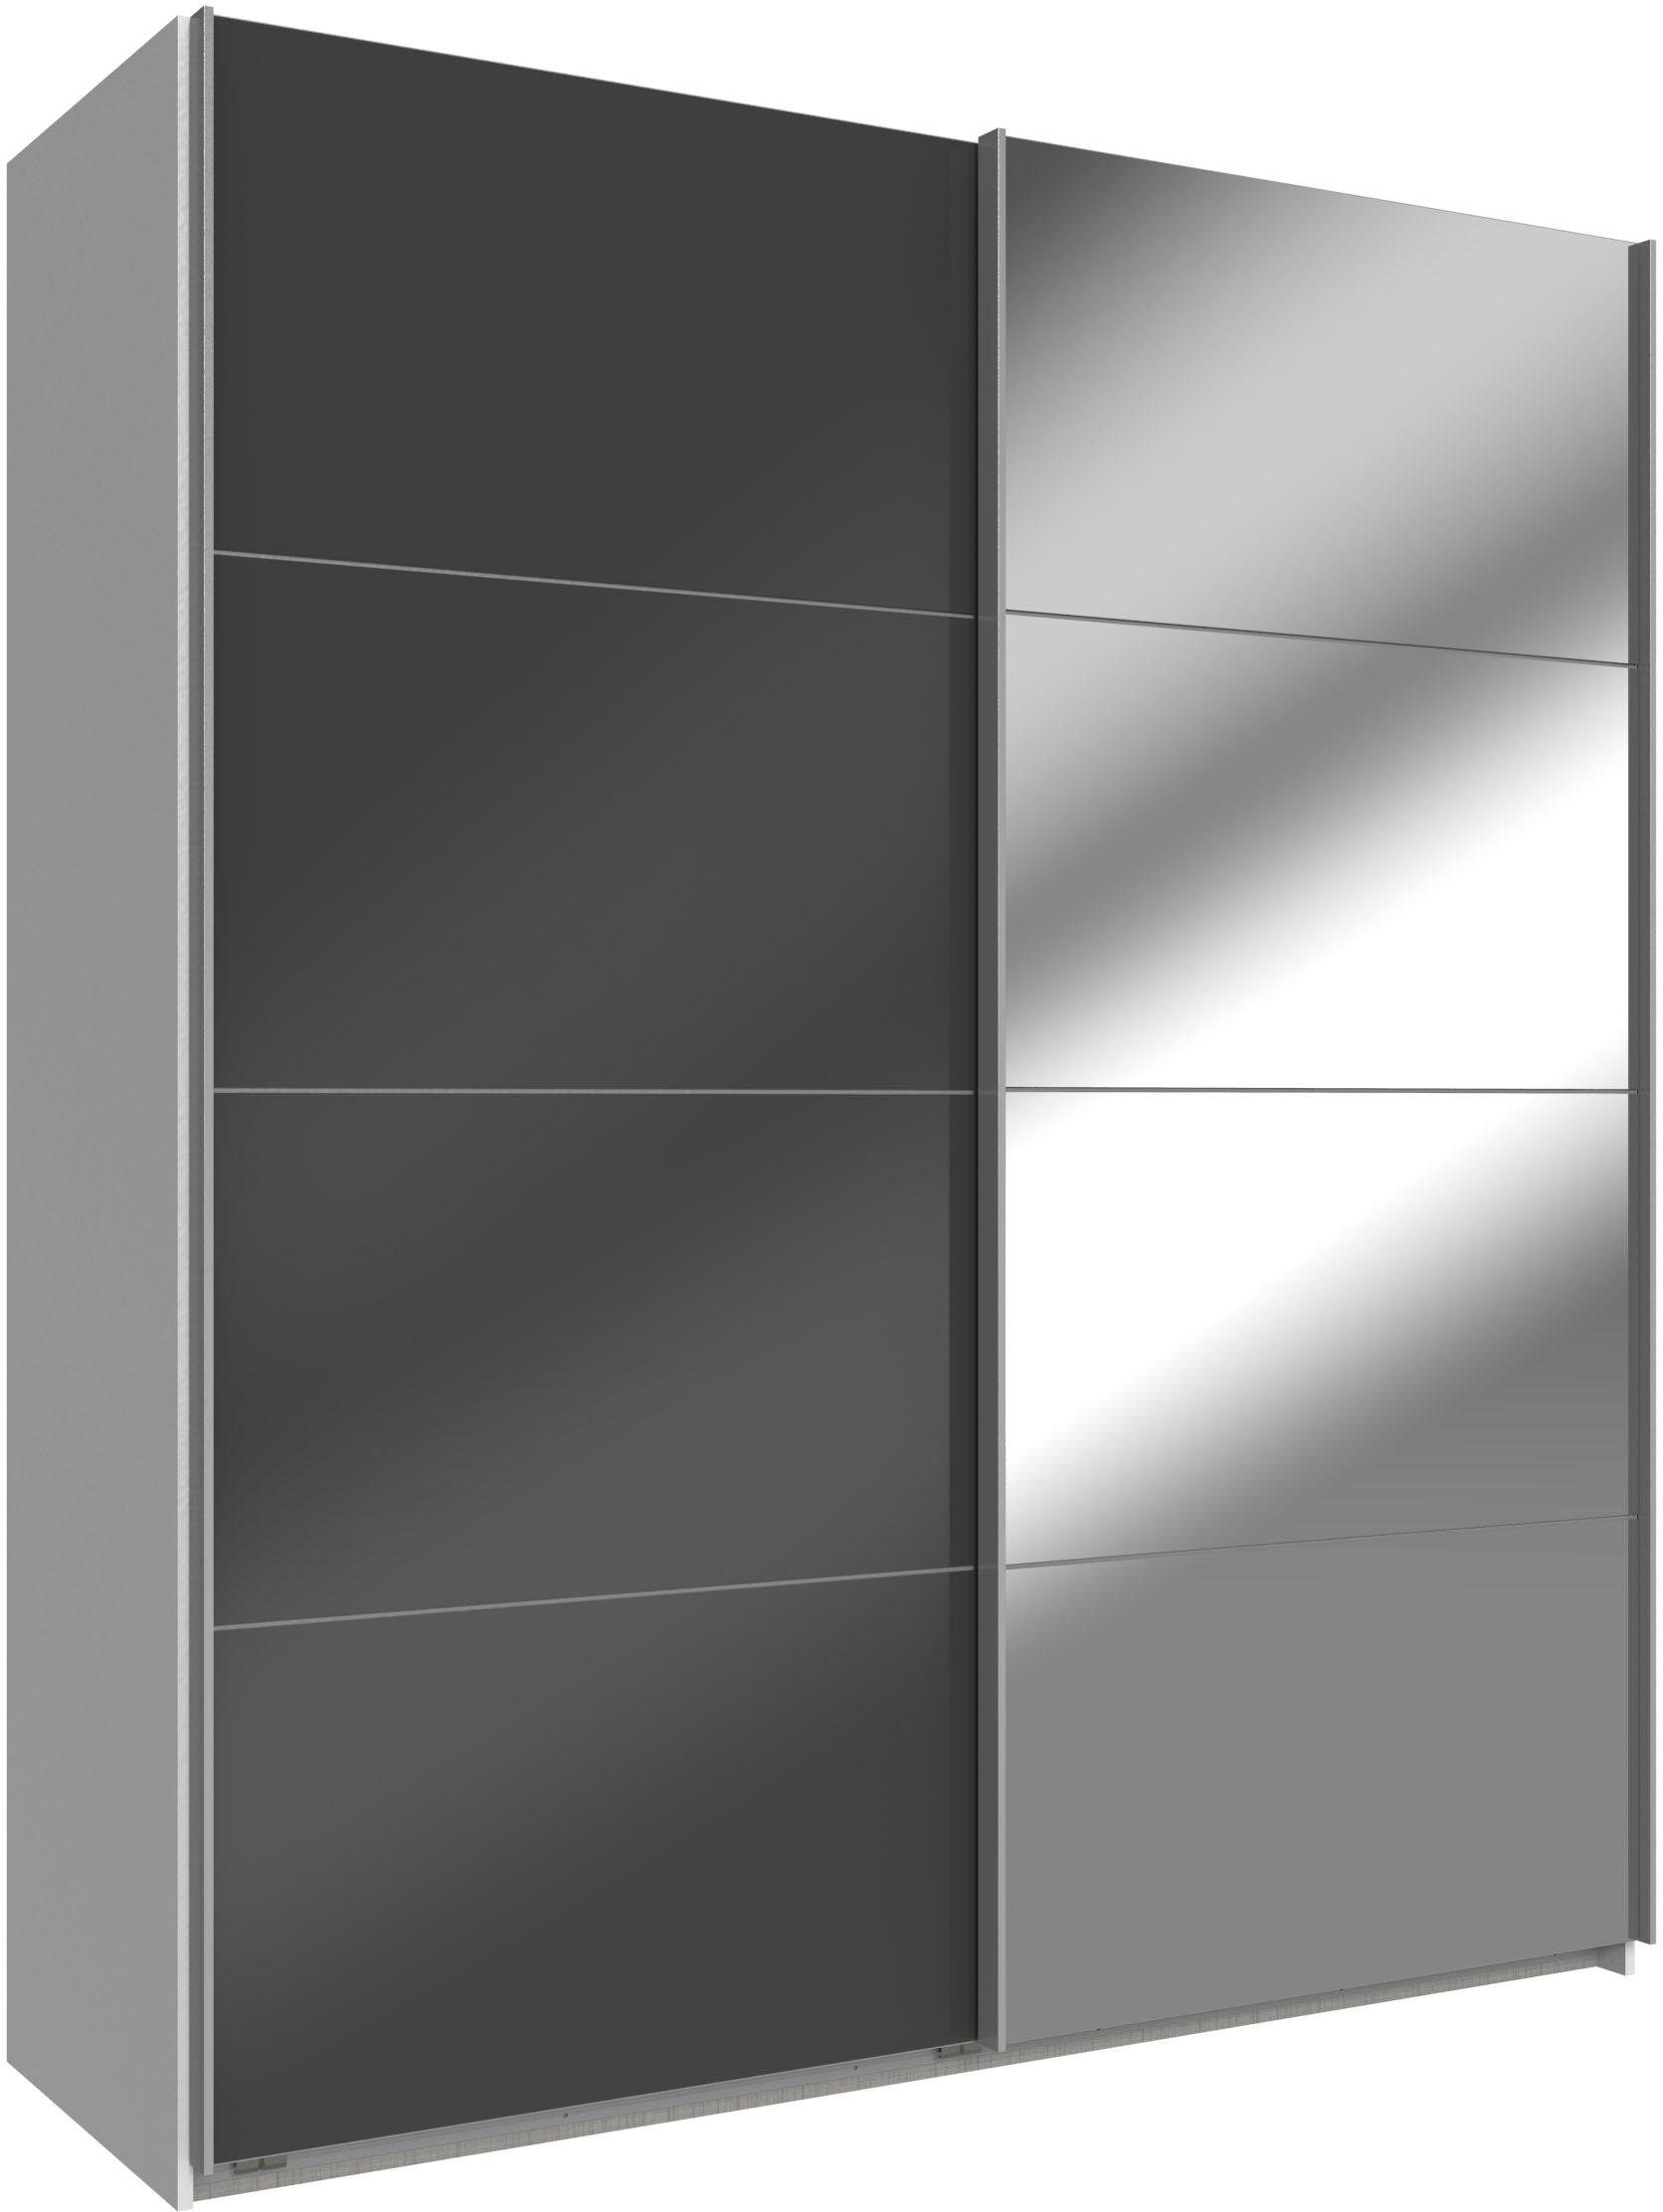 wimex zweefdeurkast easy met glas en spiegel wit